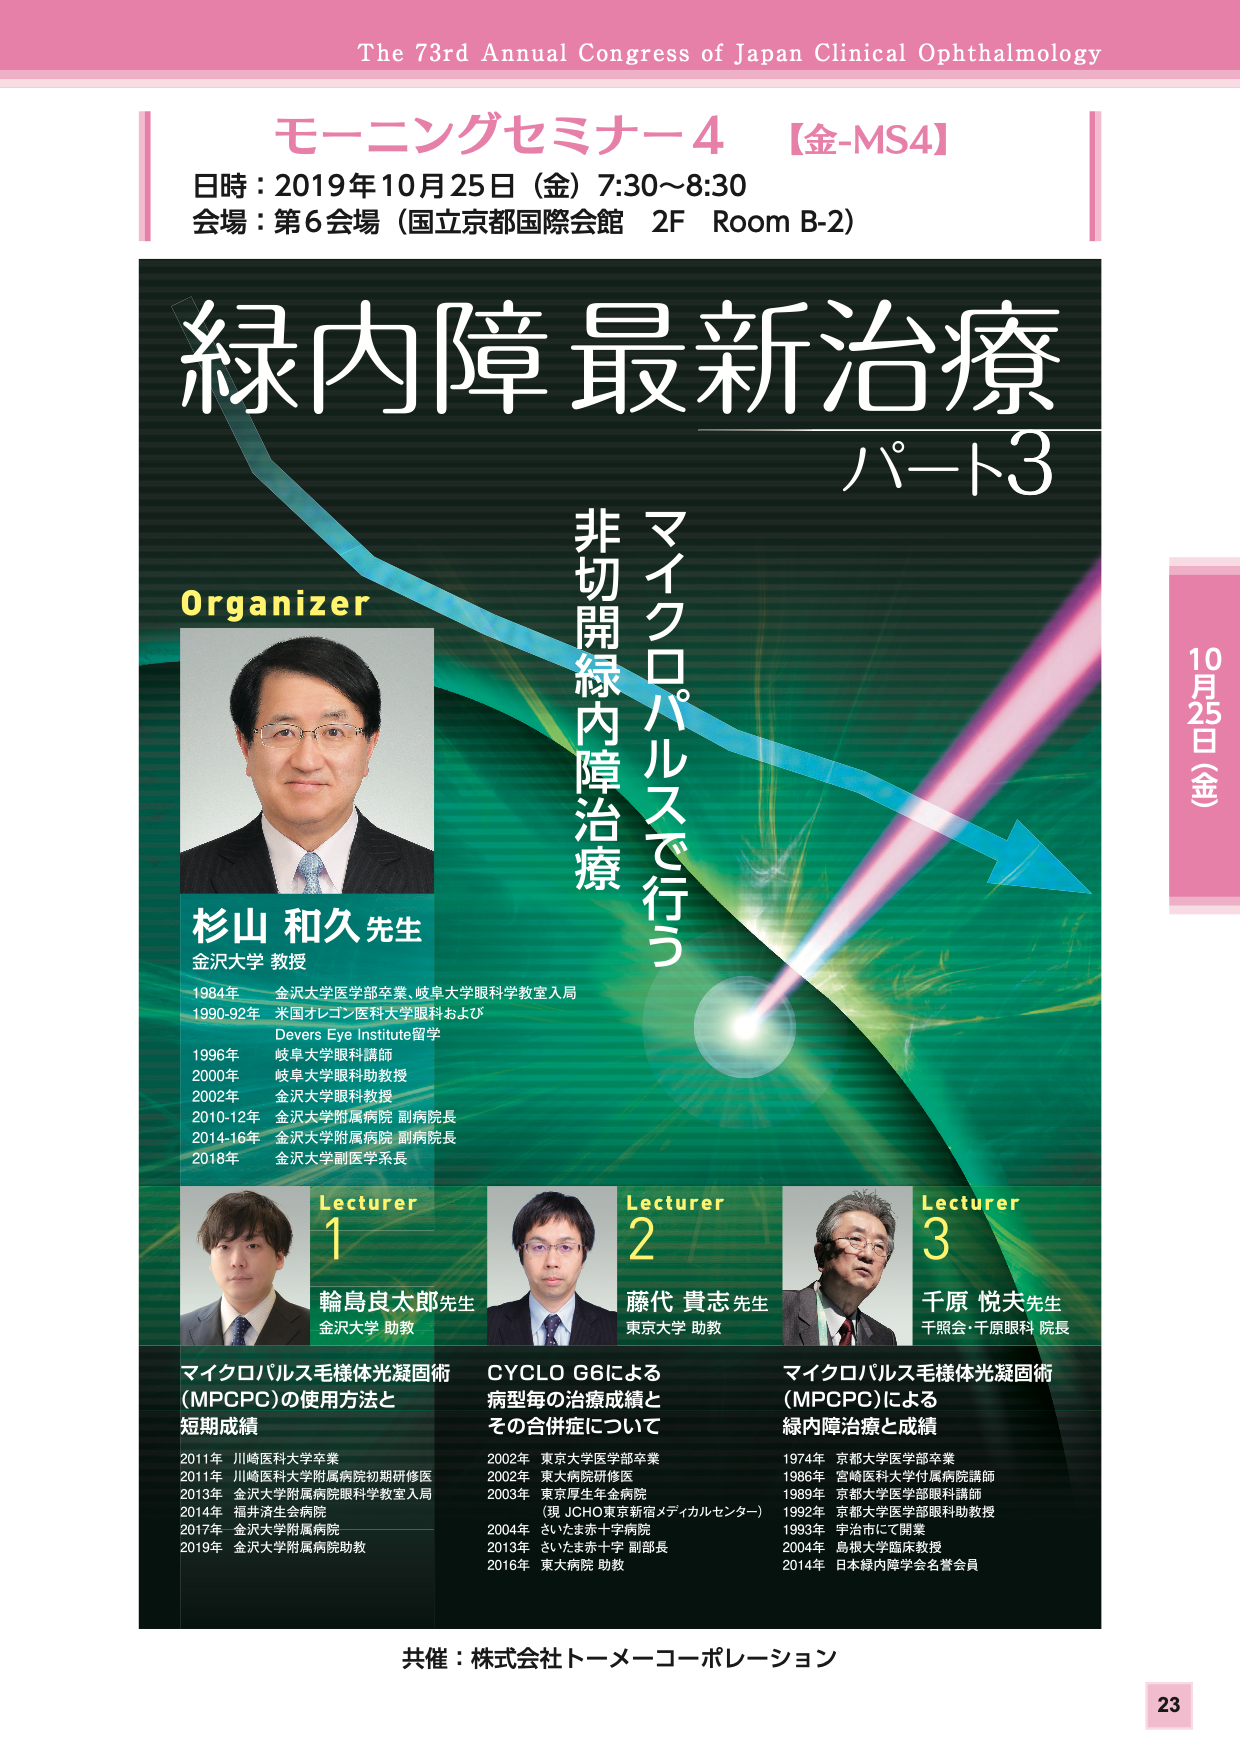 共催セミナー | 第73回日本臨床眼科学会 併設器械展示会